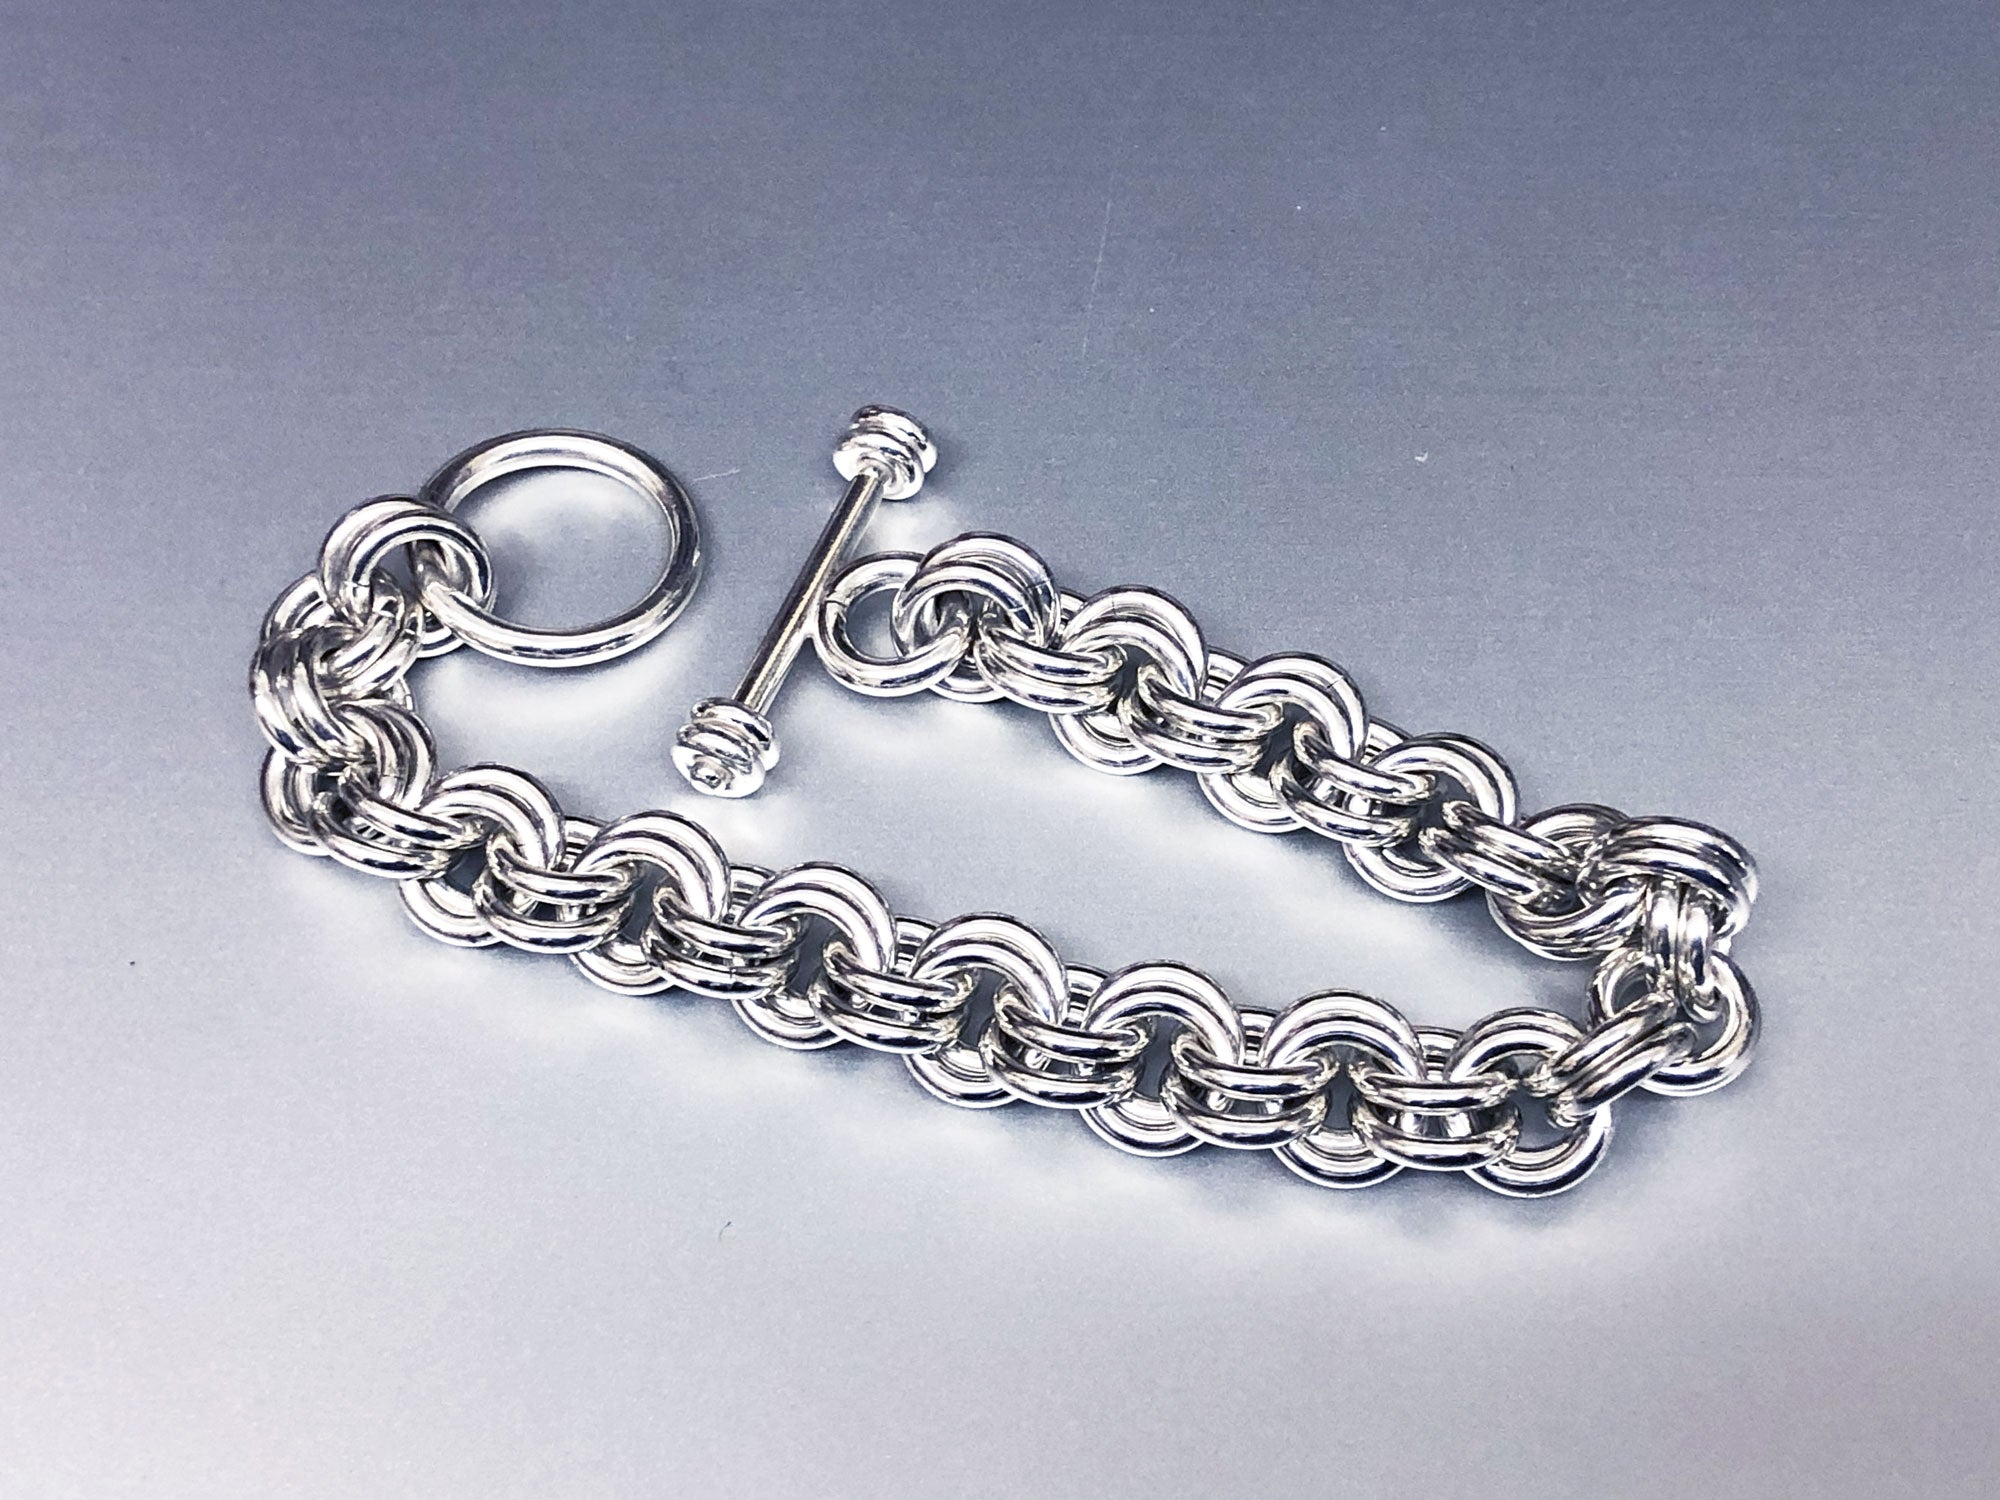 Chain Link Bracelet in Sterling Silver